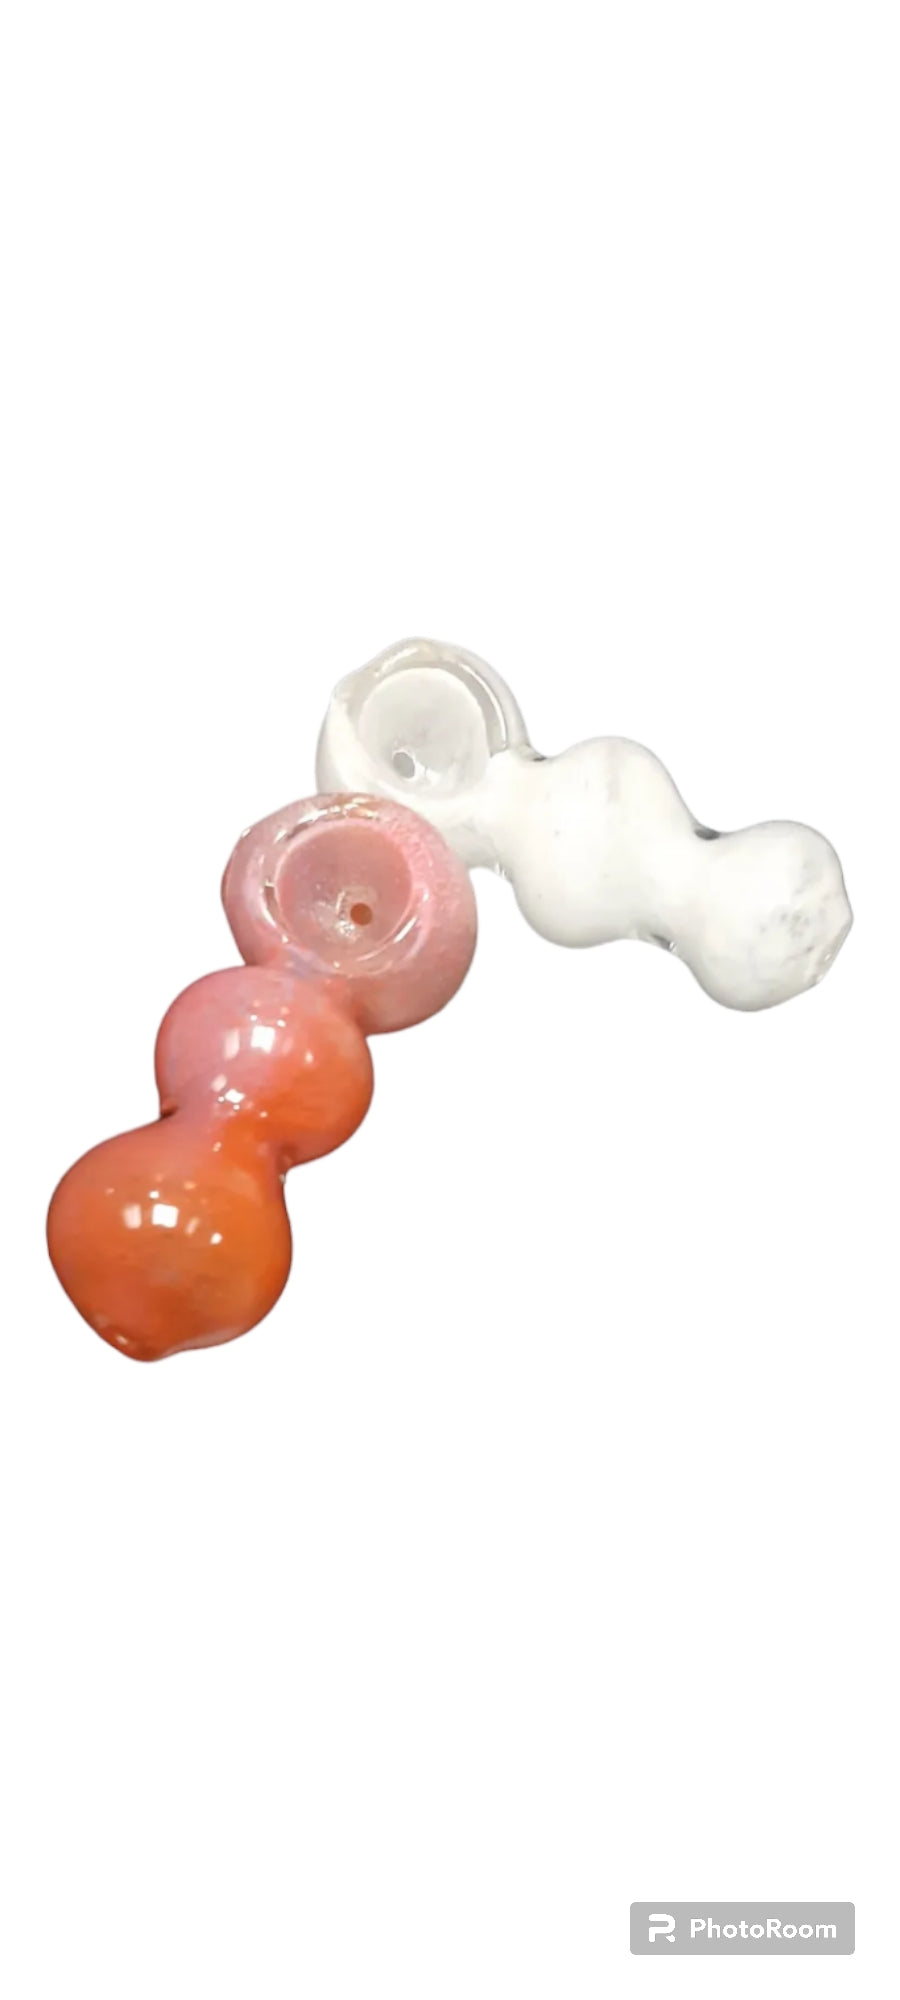 Bubble pipe